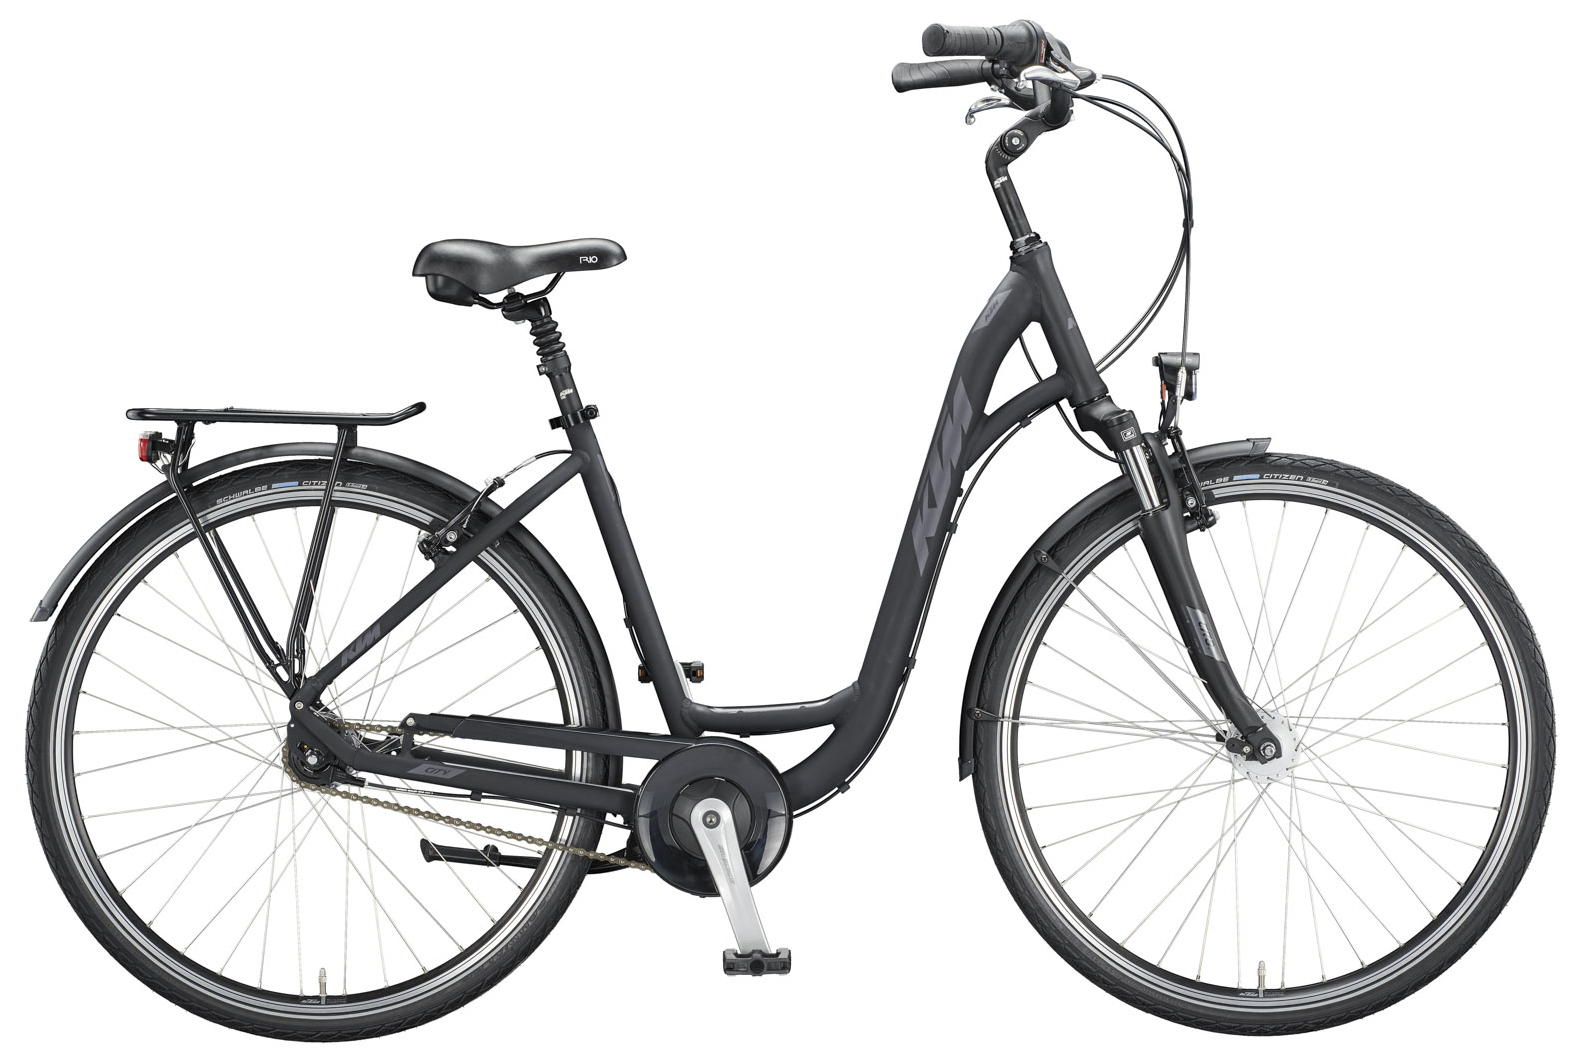  Велосипед KTM City Line 28 2020